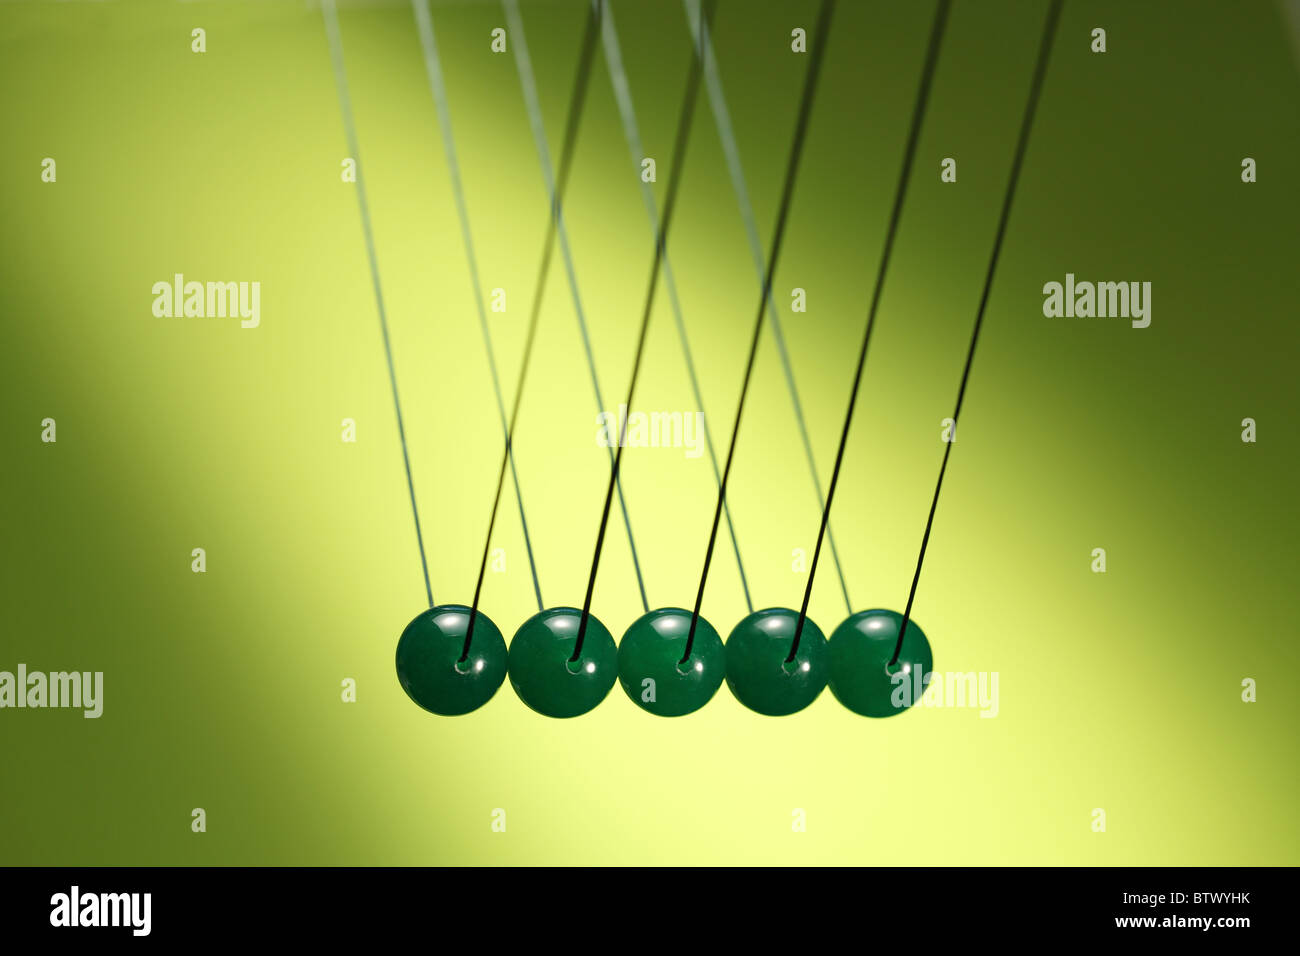 Cinco verdes canicas en fila colgando de la cadena. Ilustra Newton's cradle, un dispositivo que demuestra la conservación del impulso. Foto de stock